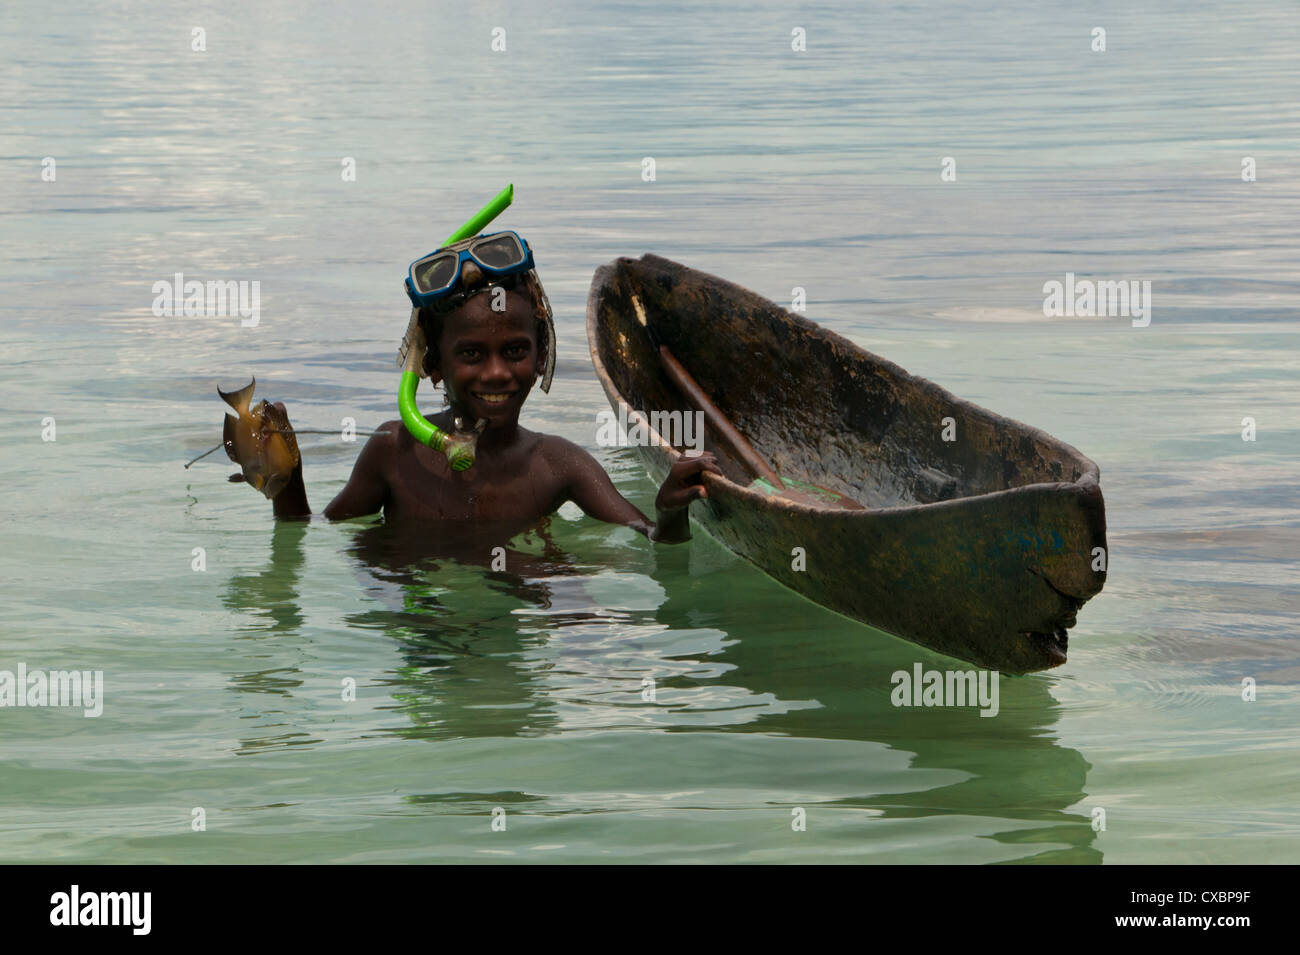 Young Boy va a su canoa y pesca con arpón, laguna Marovo, Islas